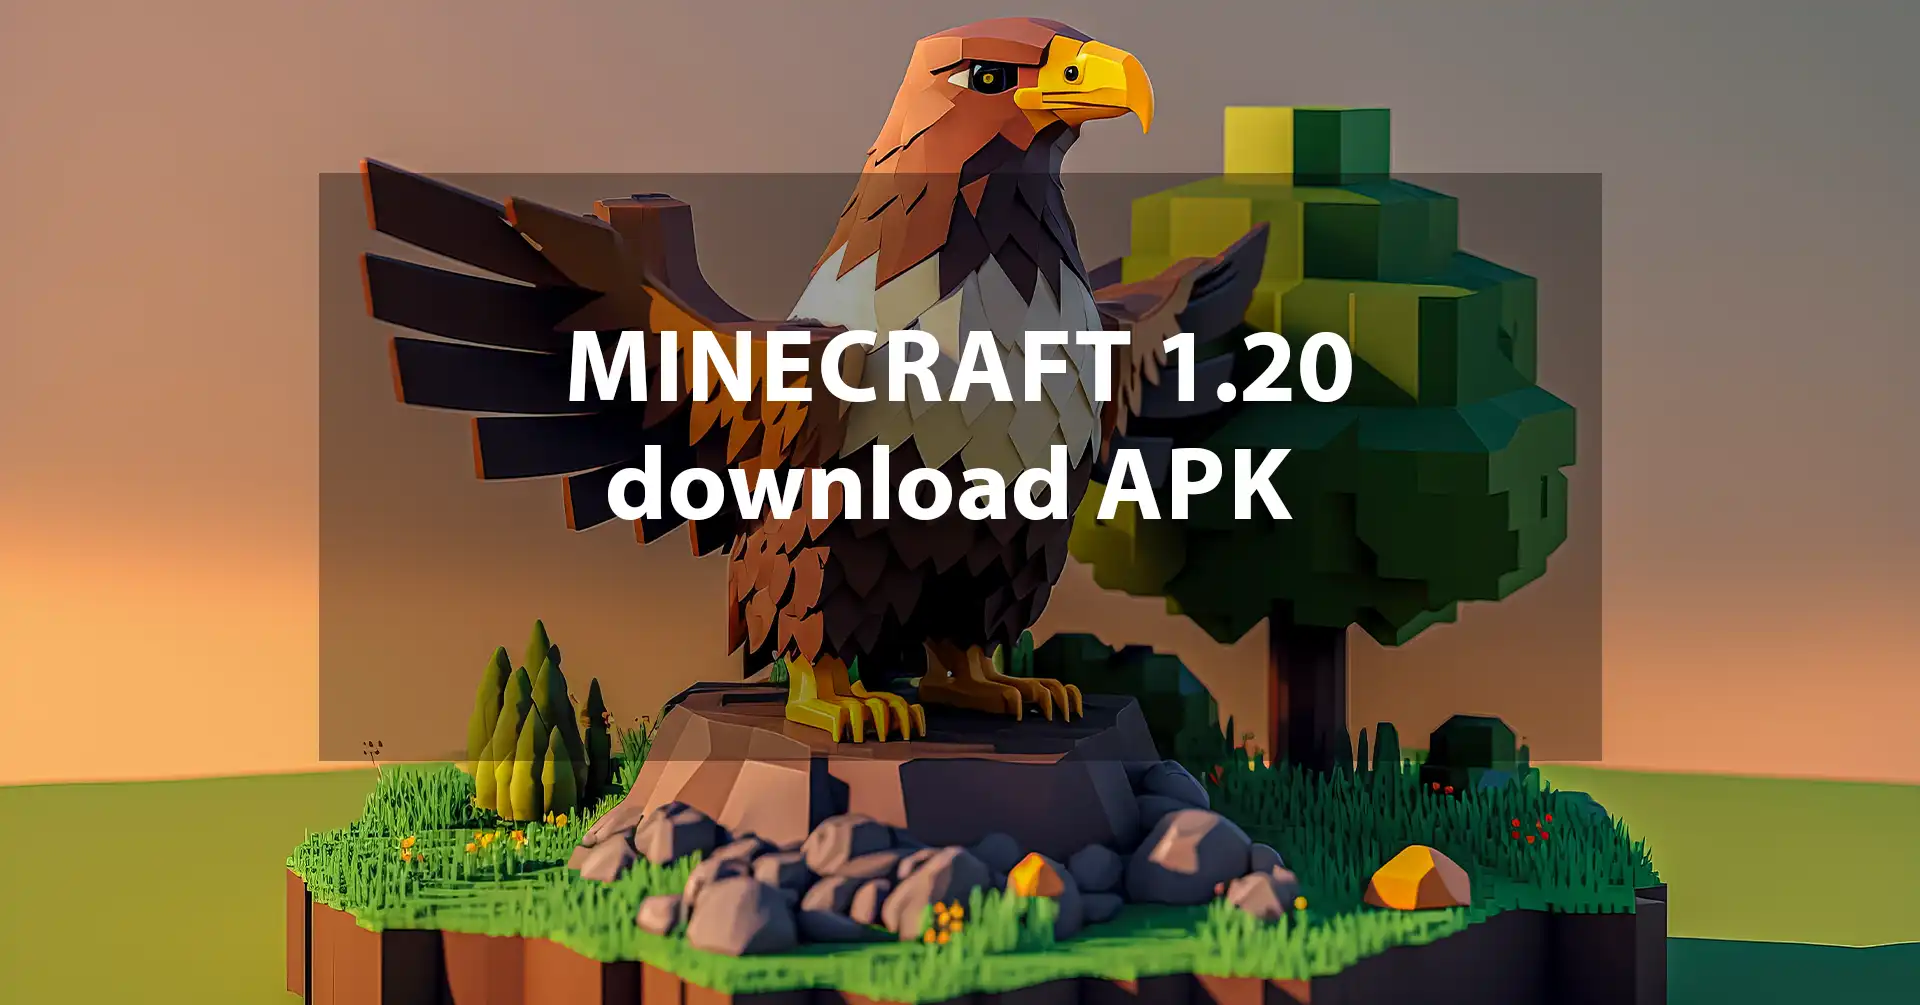 minecraft 1.20 download apk